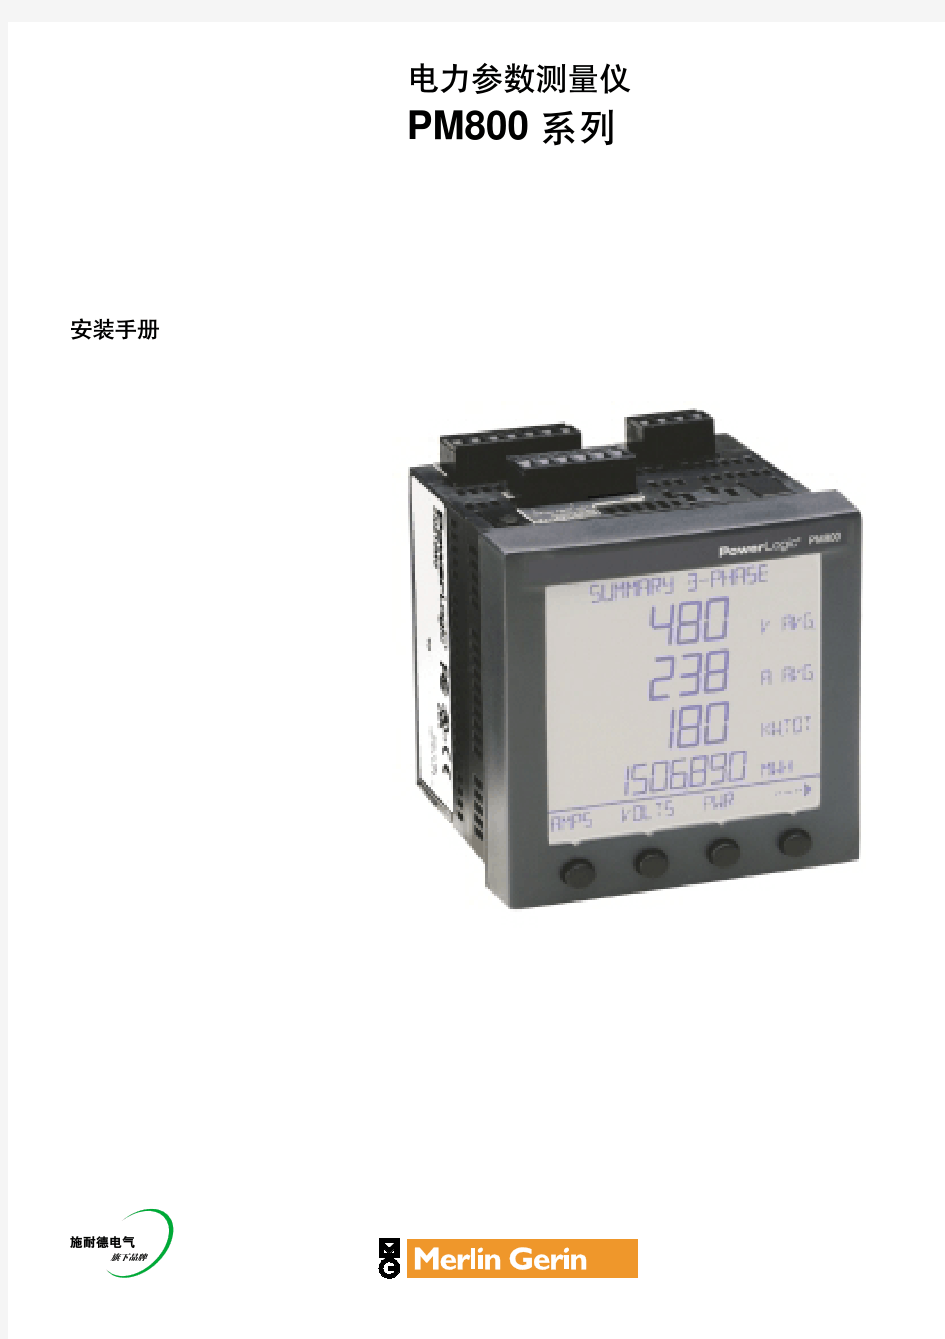 施耐德电力参数测量仪PM800安装手册